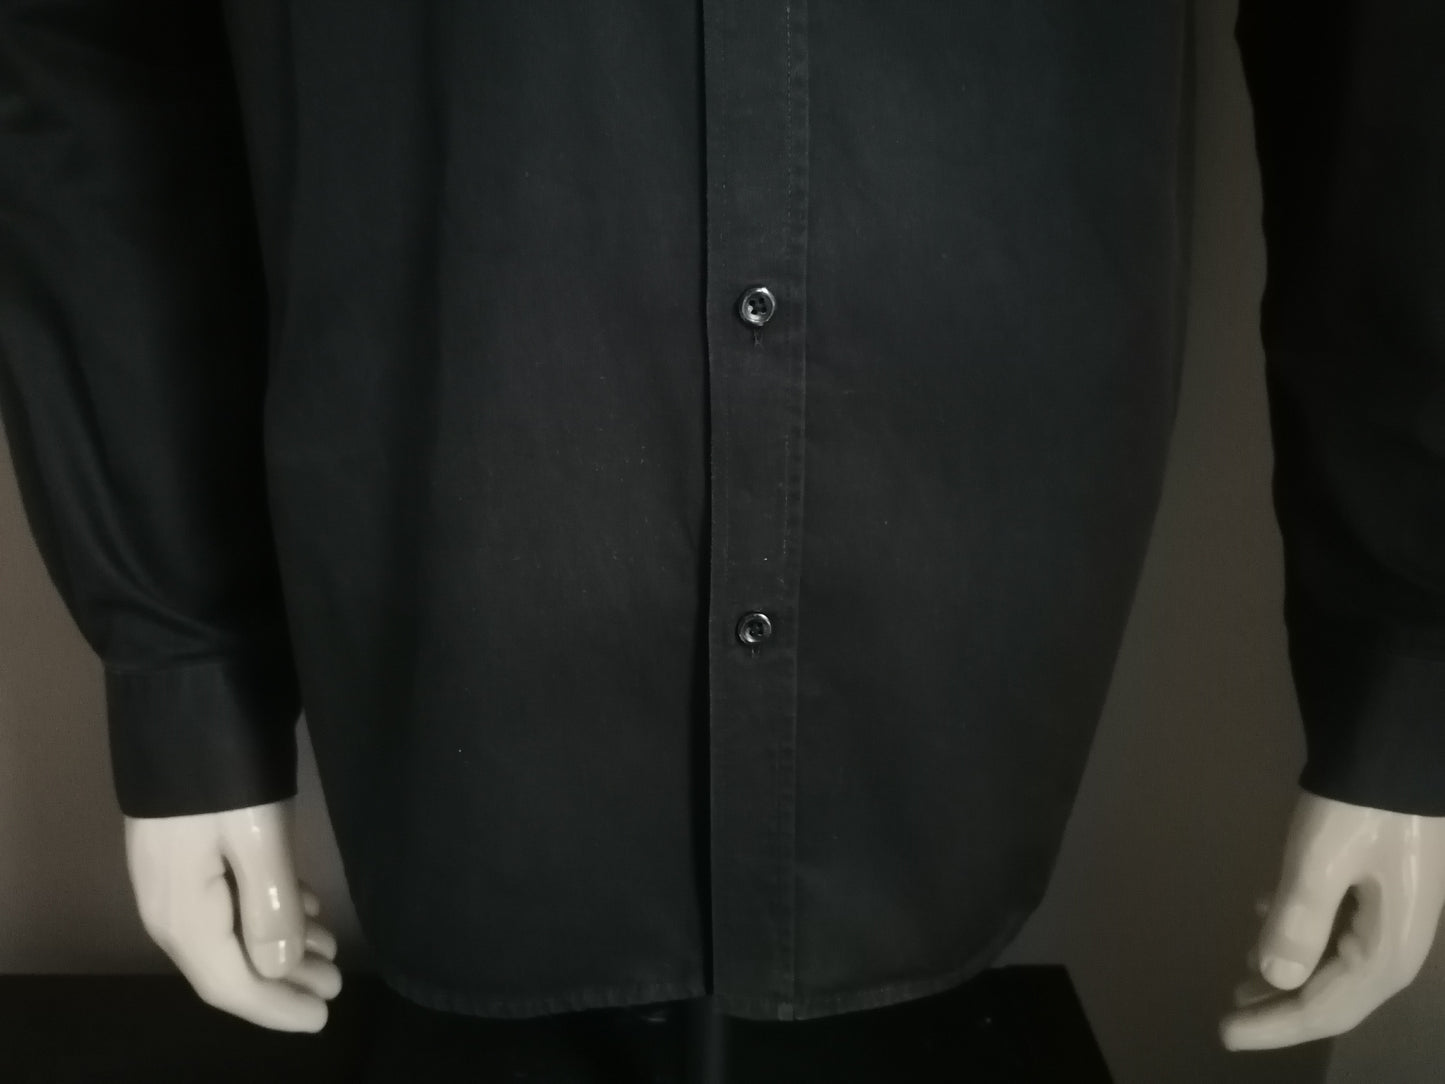 Jack & Jones Premium overhemd. Zwart gekleurd. Maat XL.